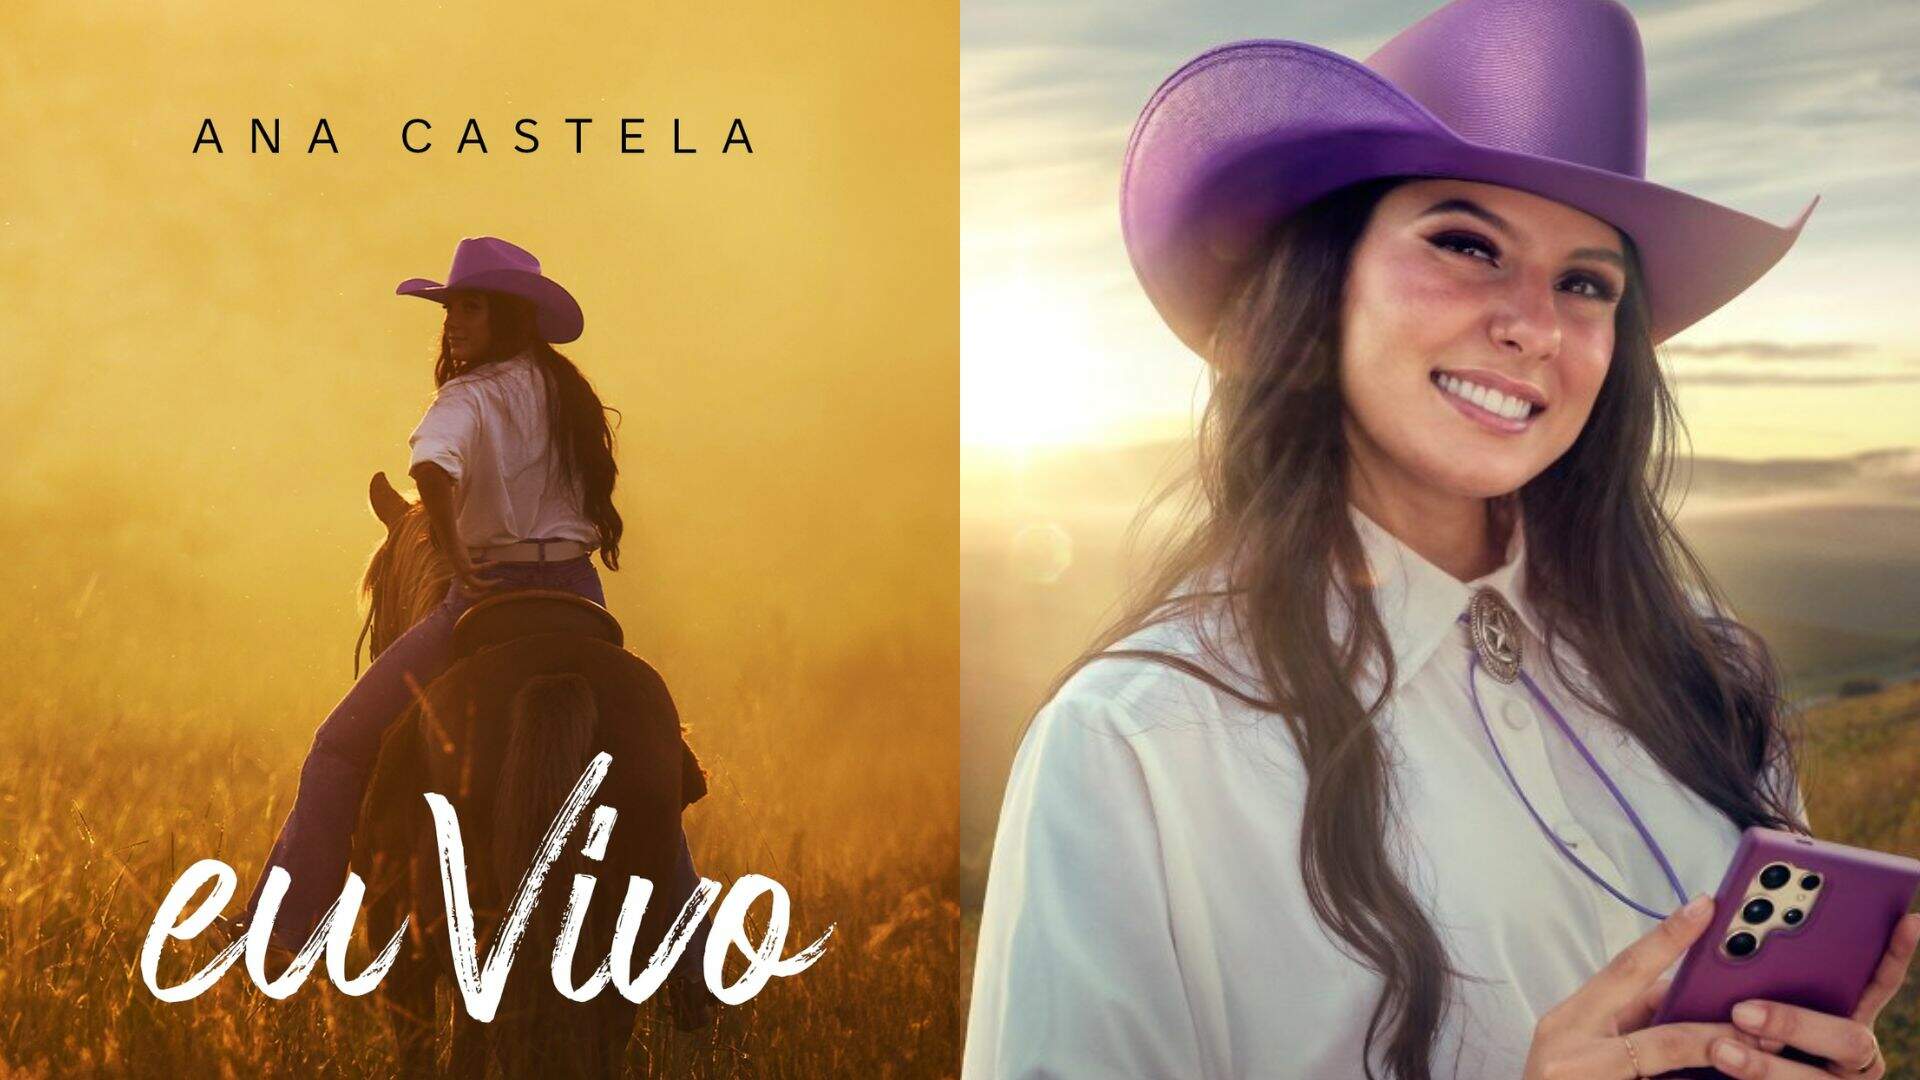 EU VIVO: Ana Castela lança canção em homenagem ao Centro-Oeste nas plataformas digitais - Metropolitana FM